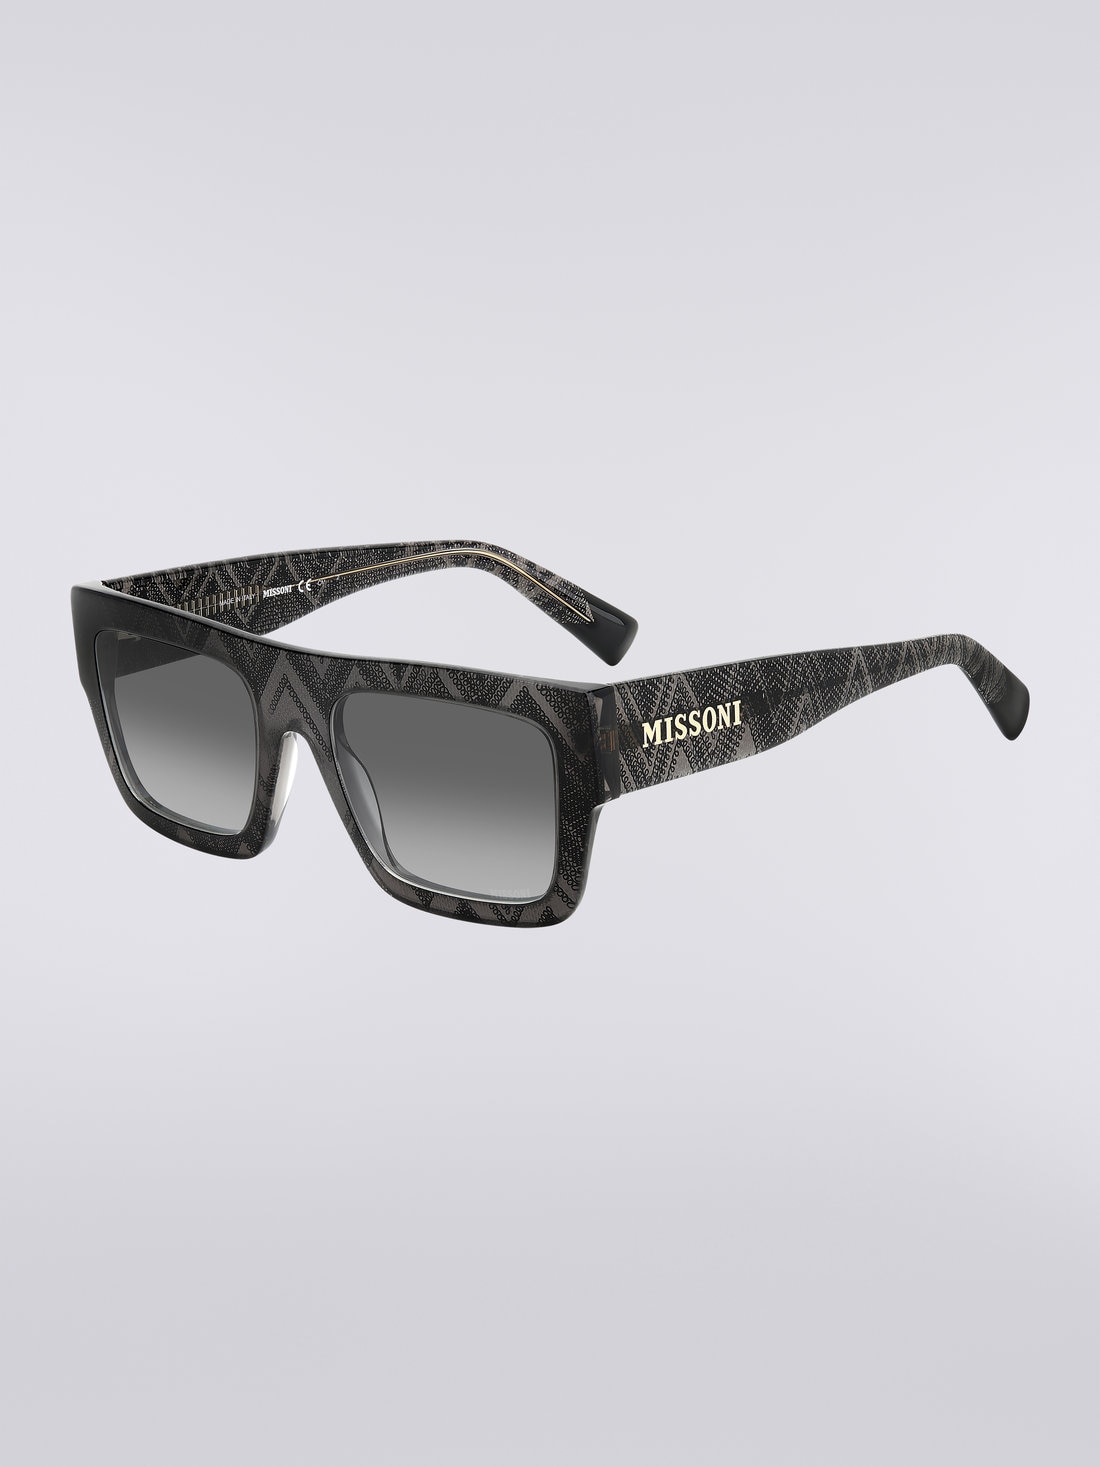 Missoni Dna Acetate Sunglasses, Multicoloured  - 8051575840272 - 1